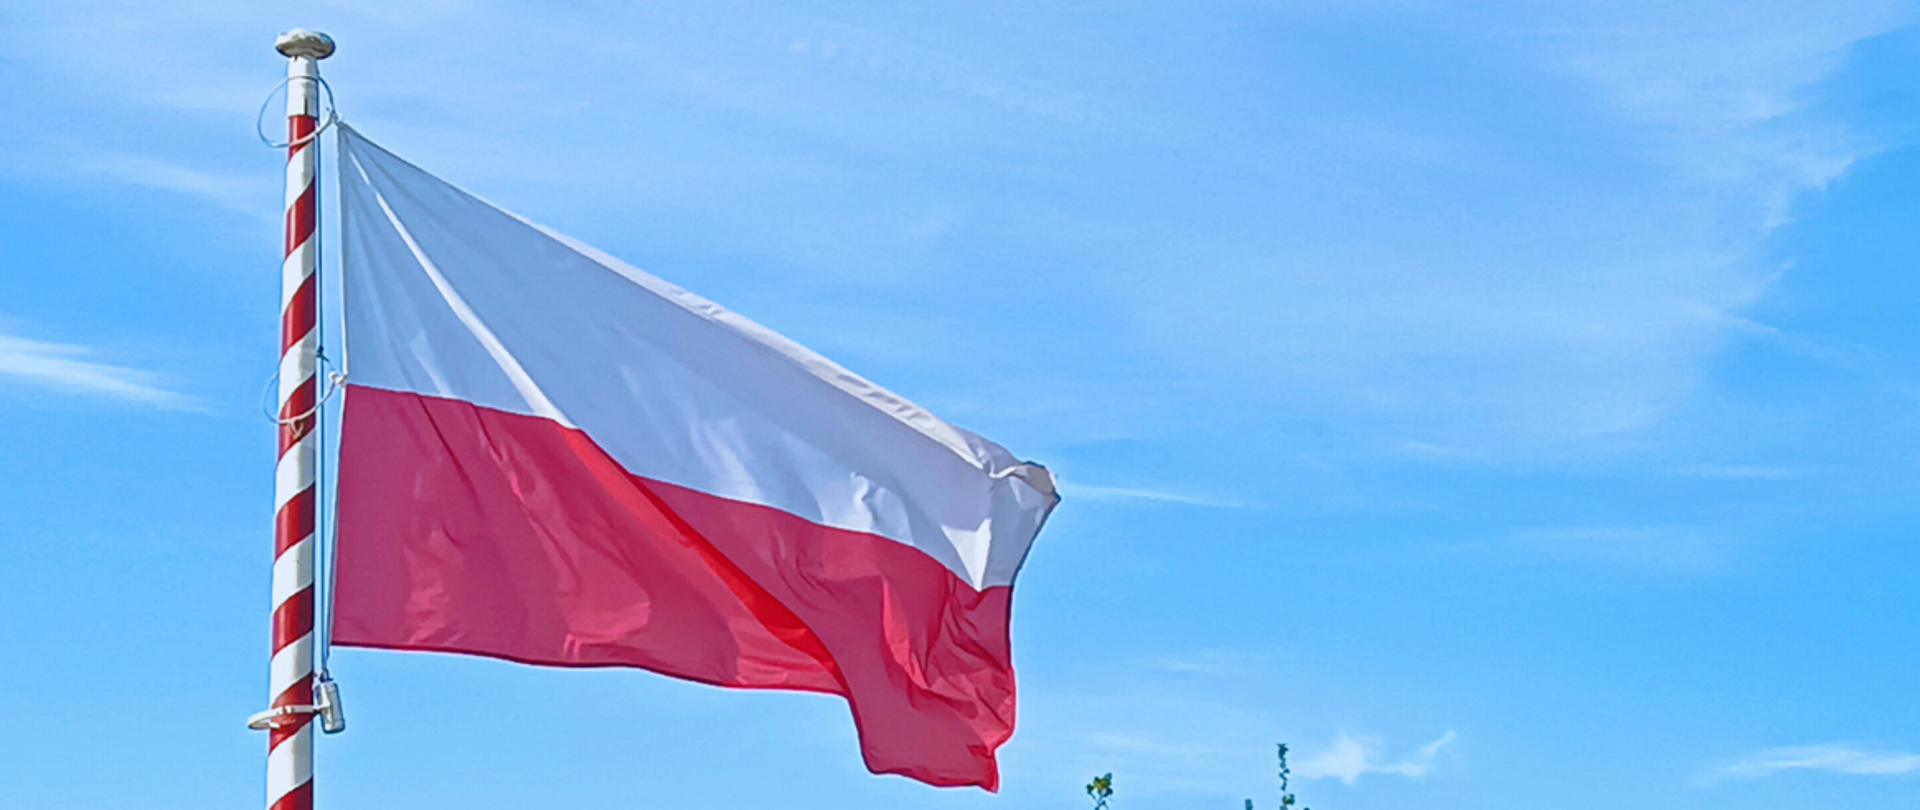 Zdjęcie przedstawia flagę Polski wciągniętą na maszt na tle błękitnego nieba.